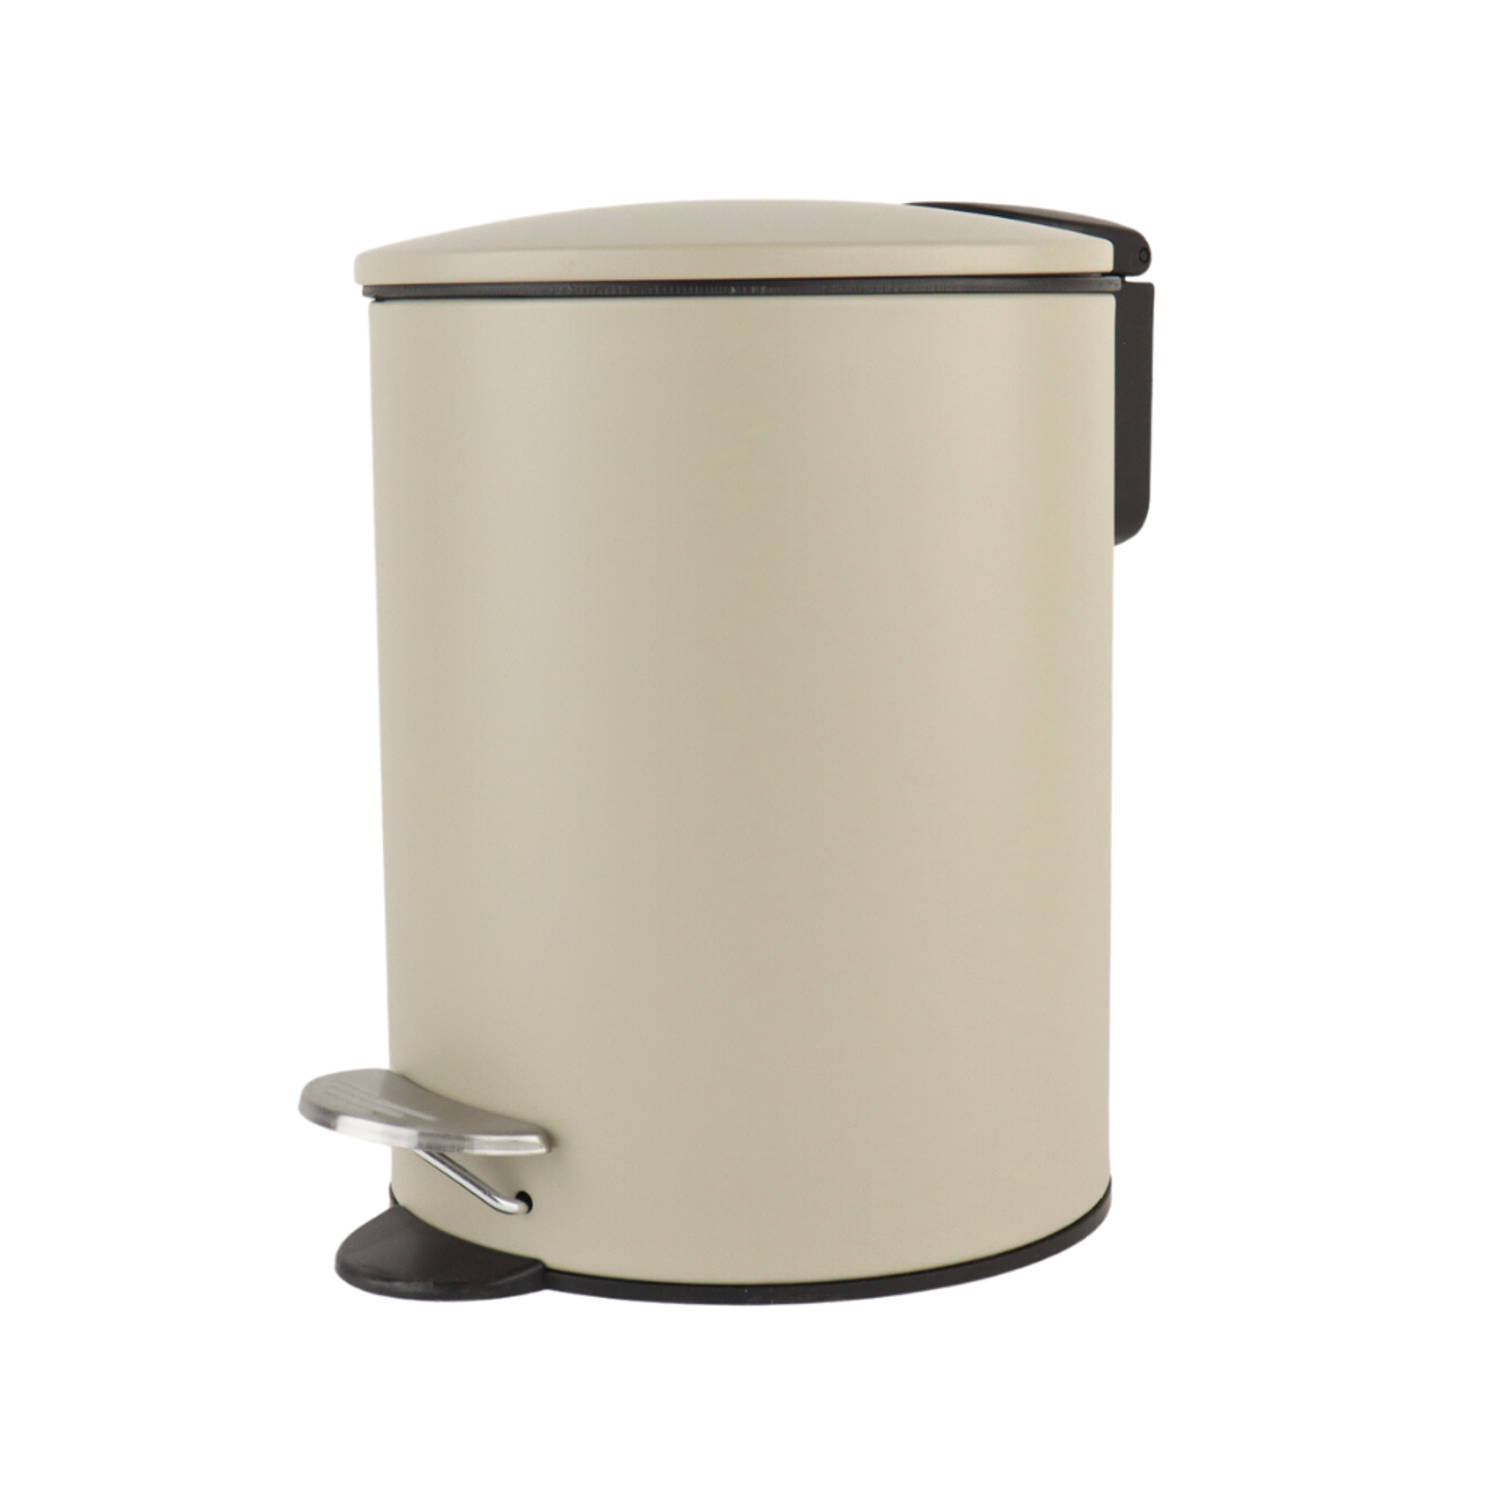 Nordix Pedaalemmer - 3 Liter - Badkamer - Toilet - Beige - Metaal